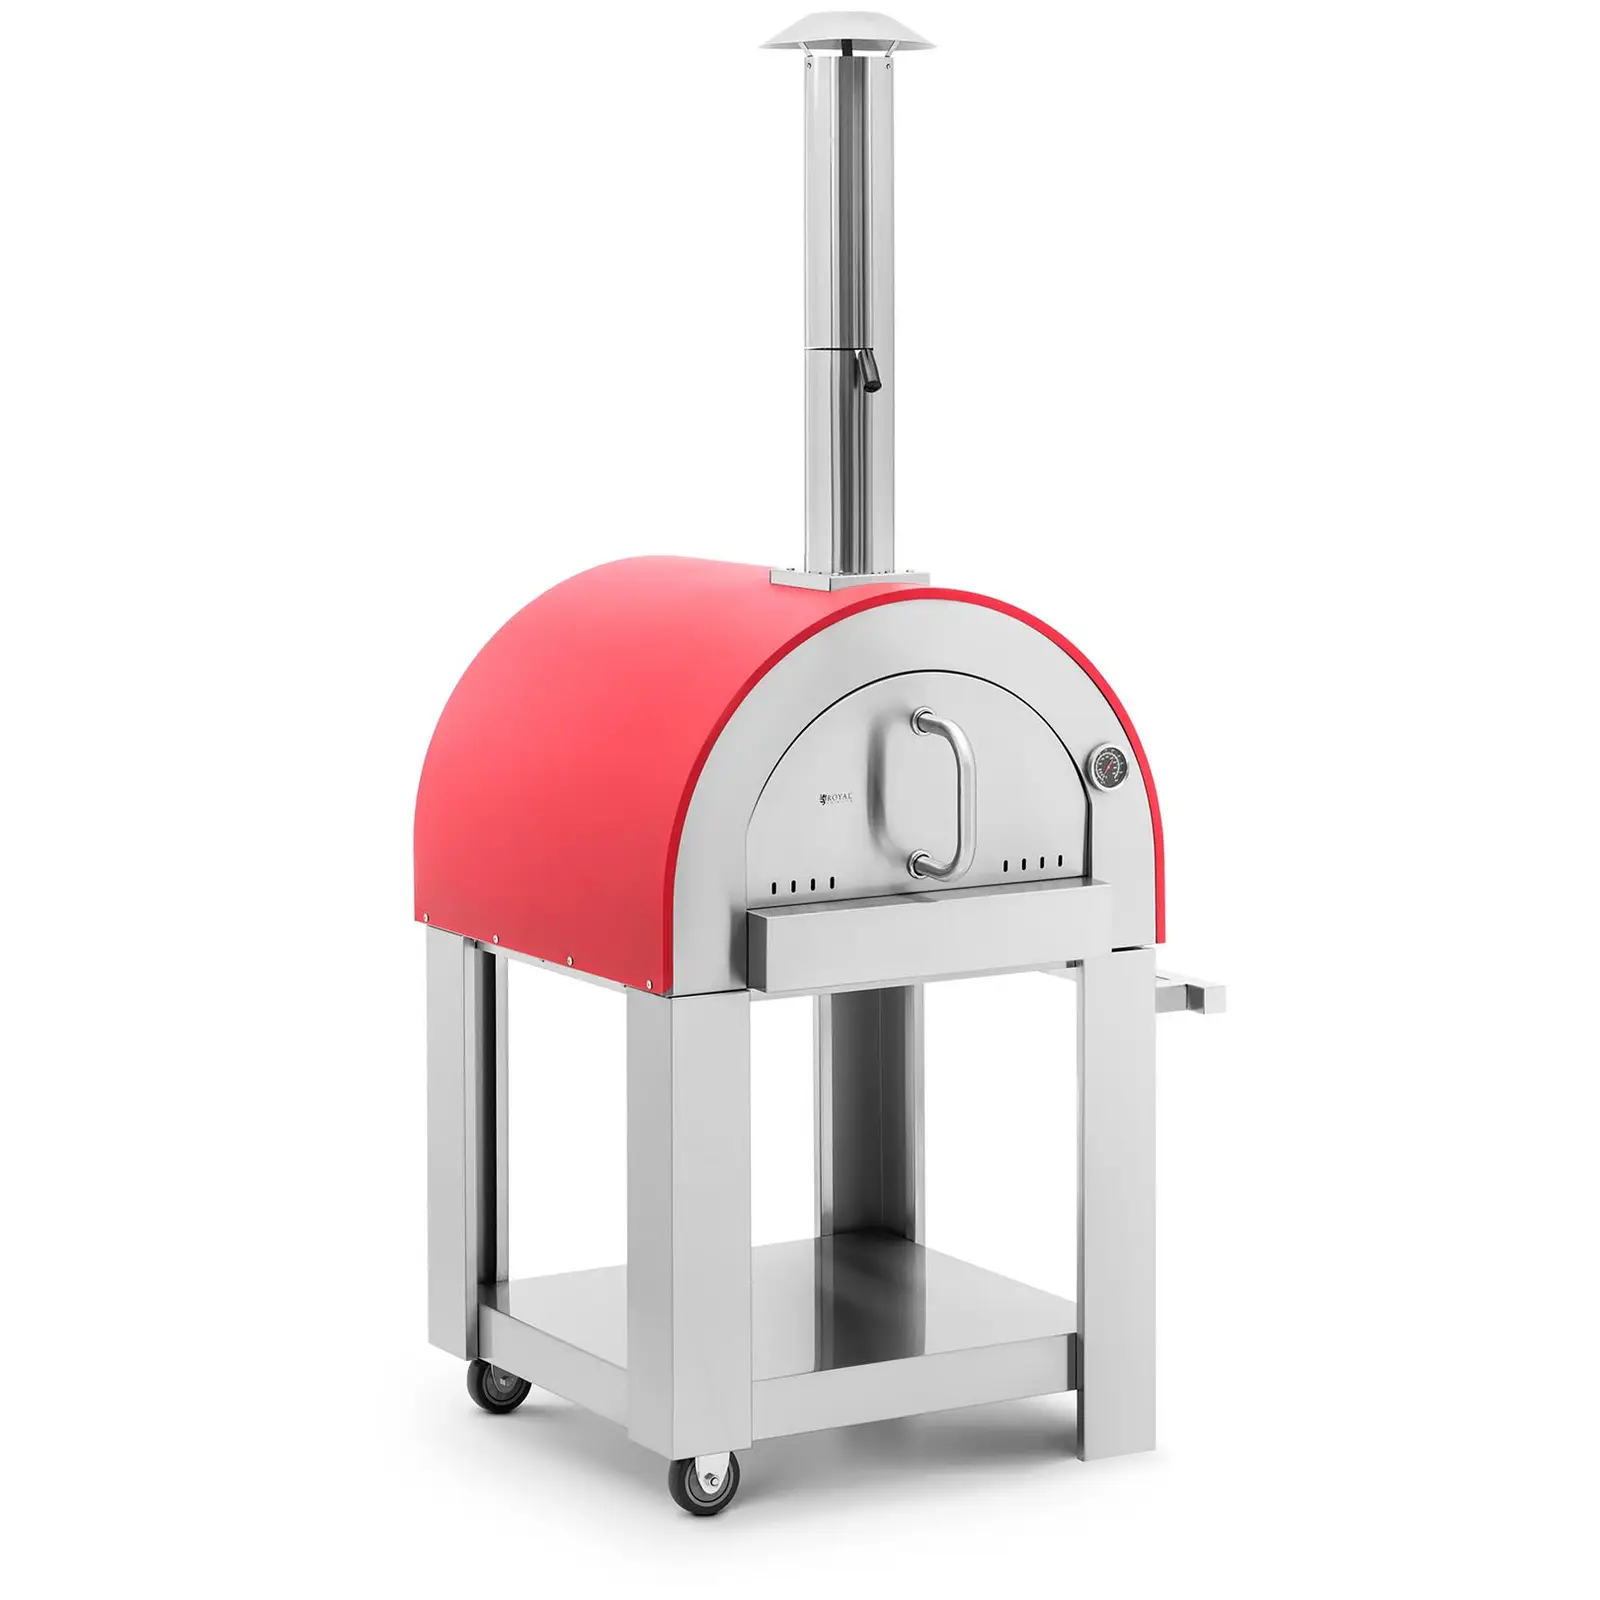 Fatüzelésű pizzasütő kemence - agyaglap - 220 °C - Ø 40,5 cm - Royal Catering